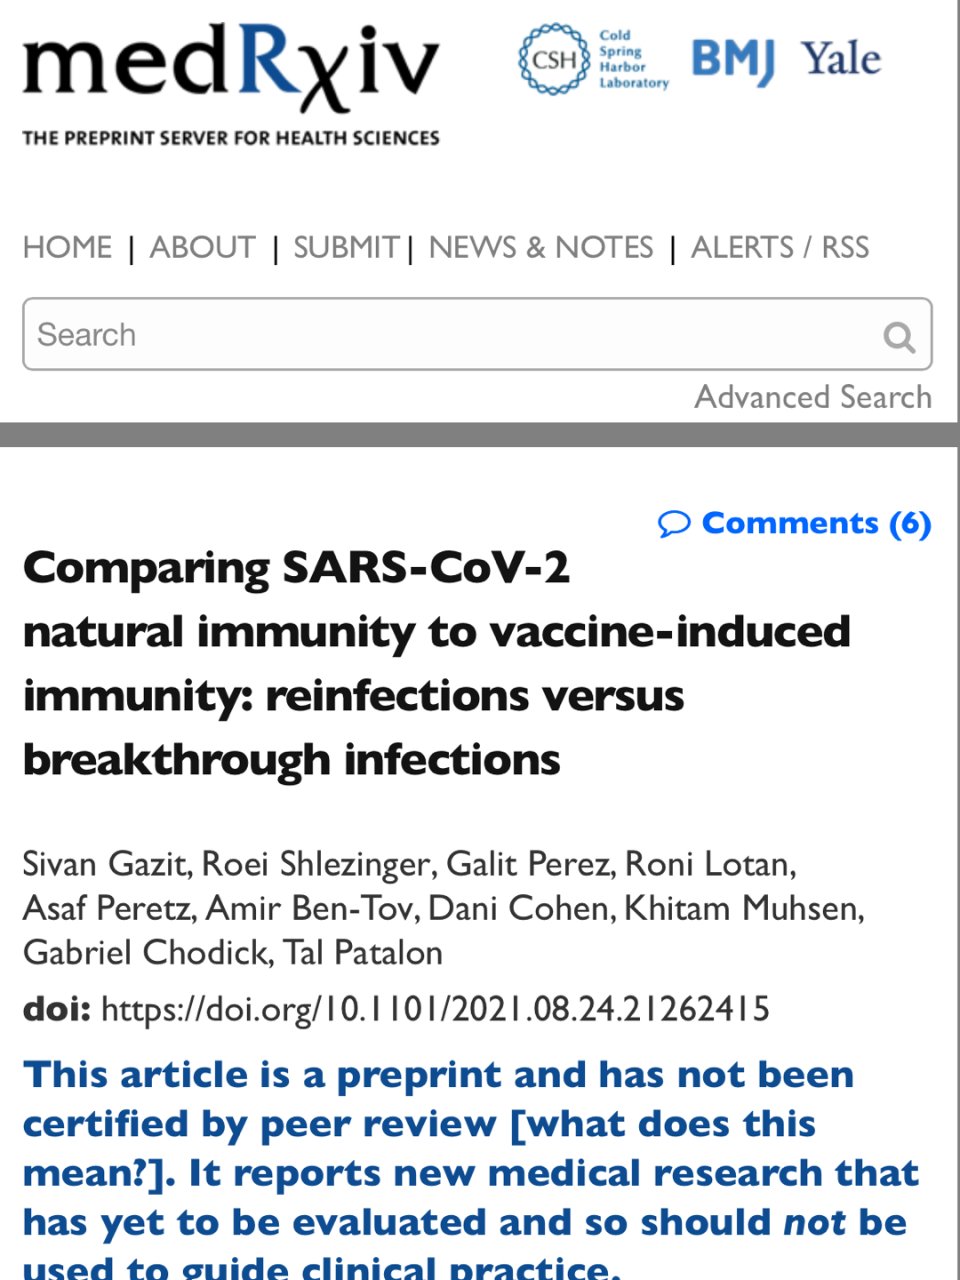 新冠感染后的自然免疫保护比辉瑞疫苗更能预...